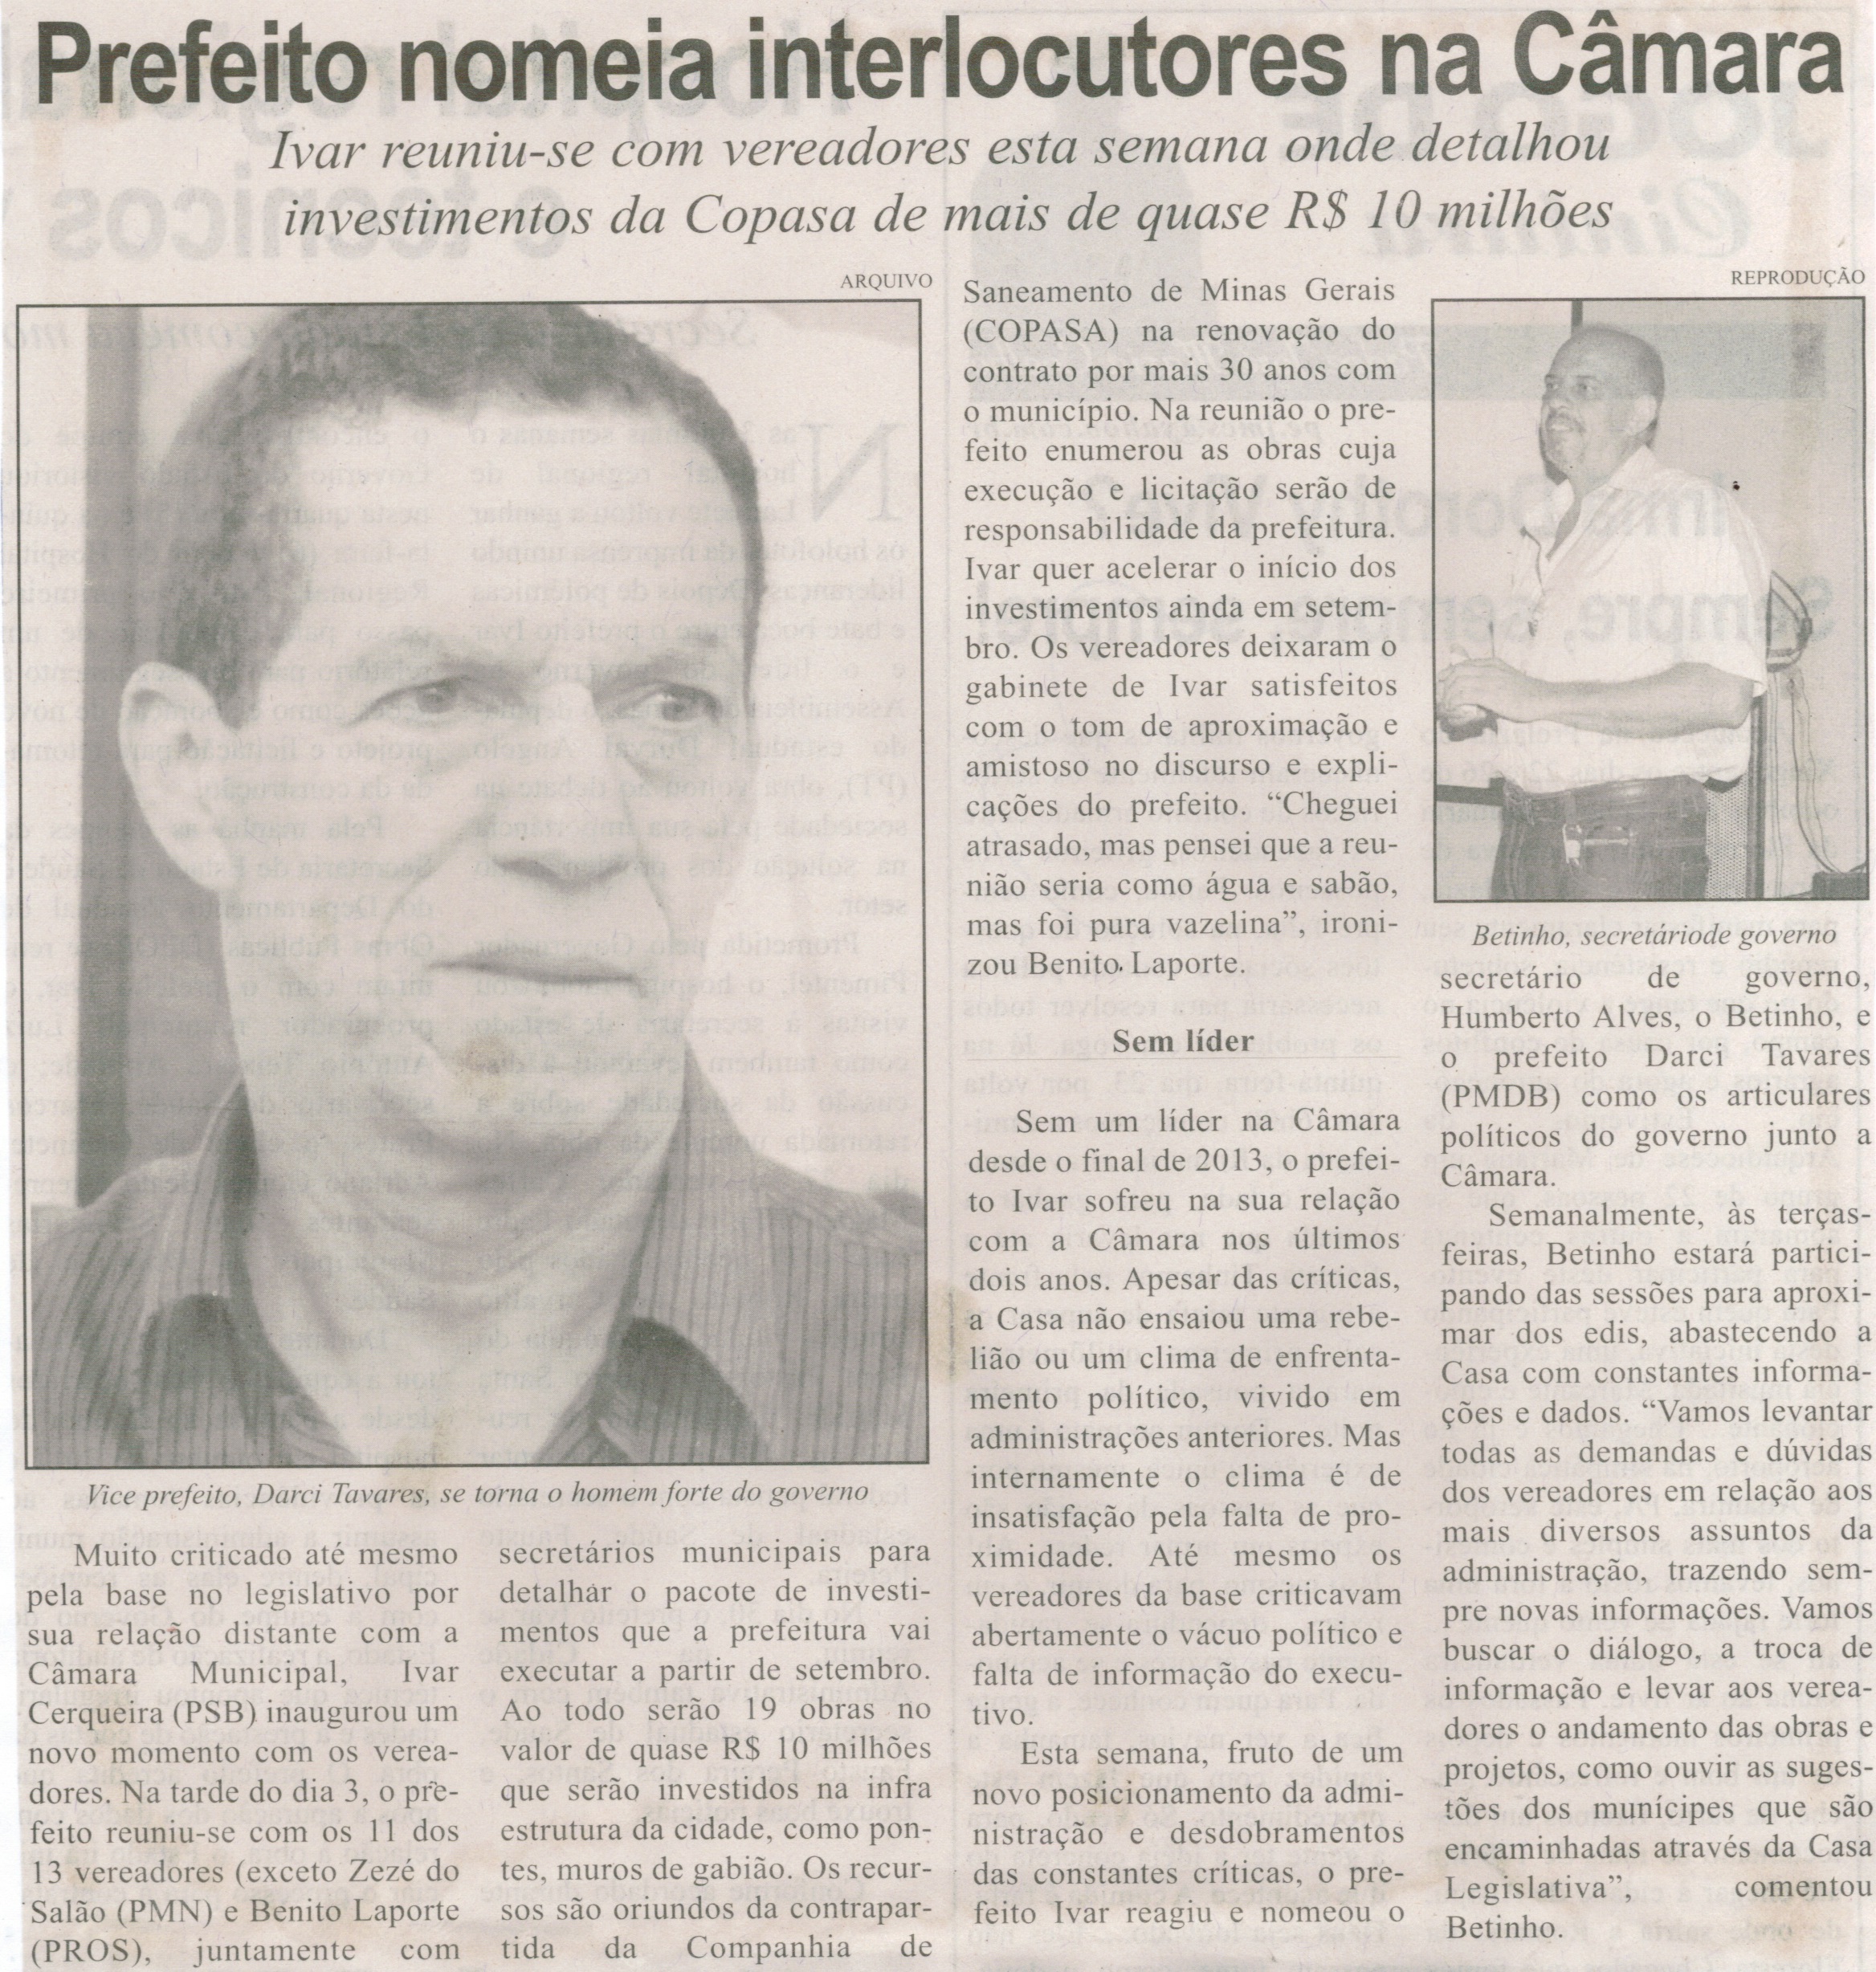 Prefeito nomeia interlocutores na Câmara. Jornal Correio de Minas, Conselheiro Lafaiete, 08 ago. 2015, p. 03.